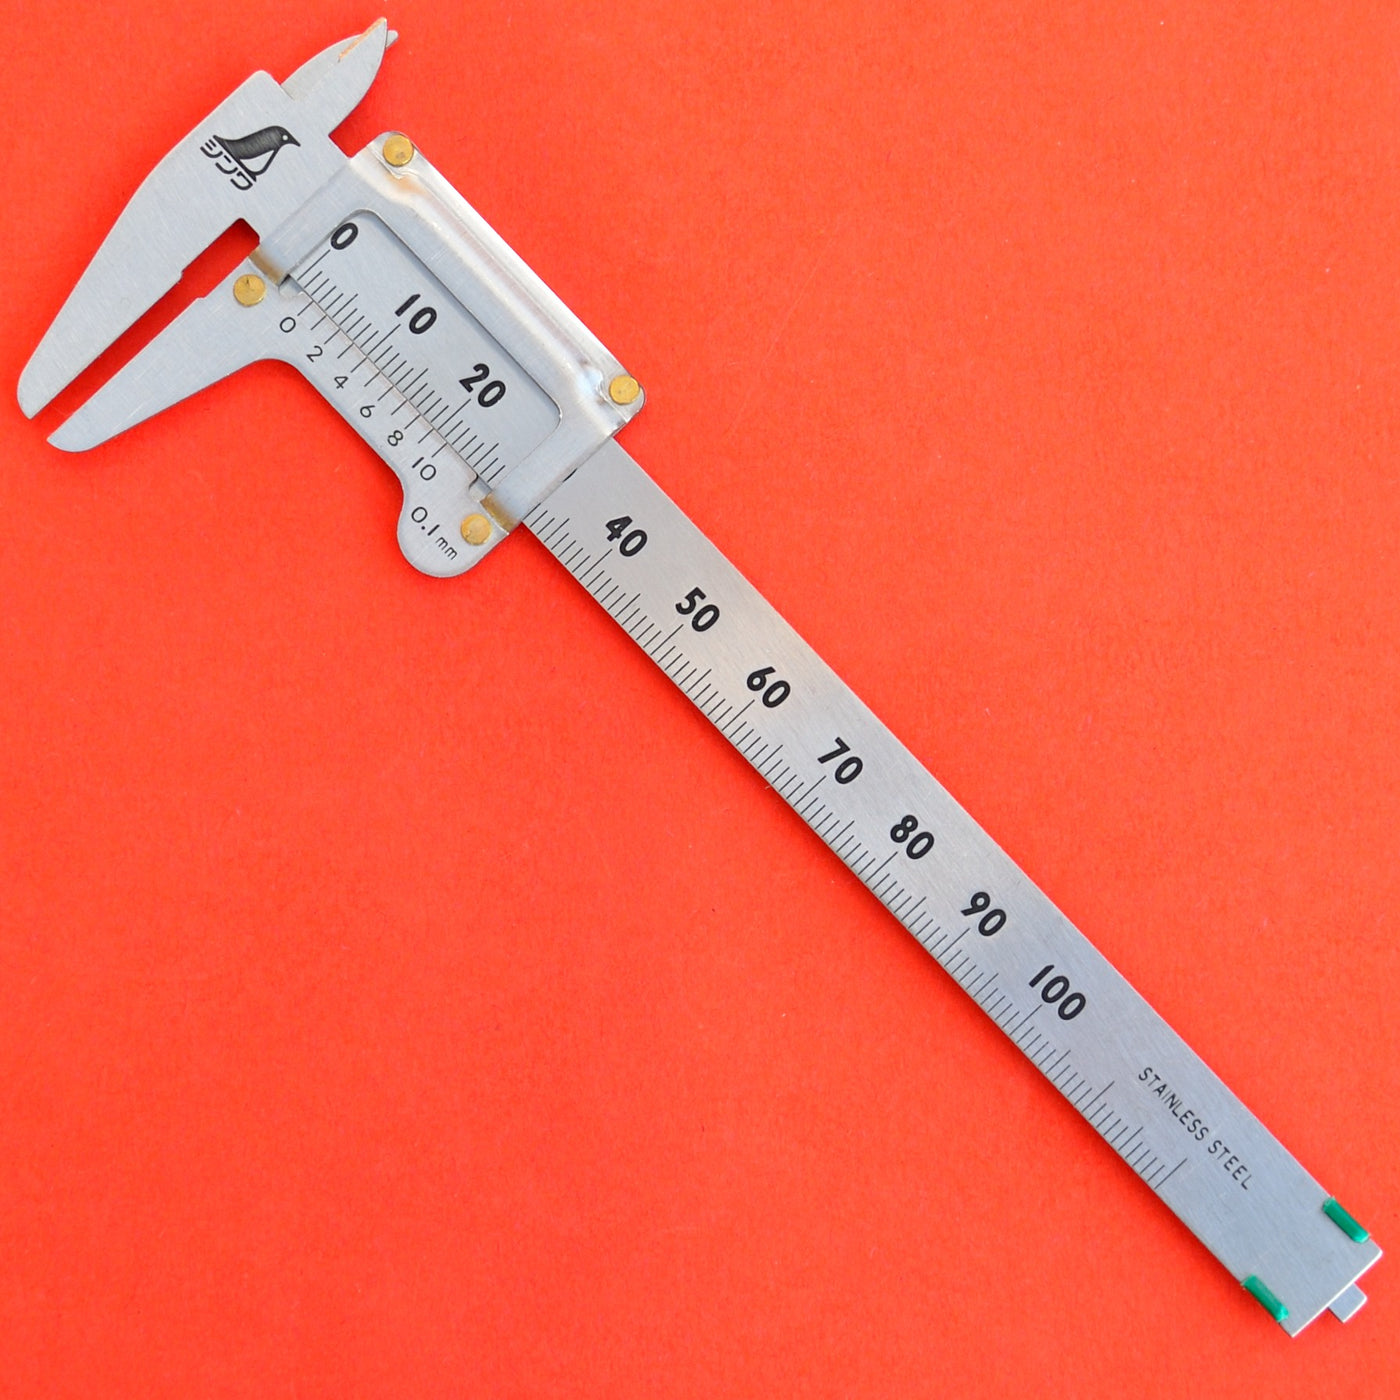 Precision ruler pickup - 15cm